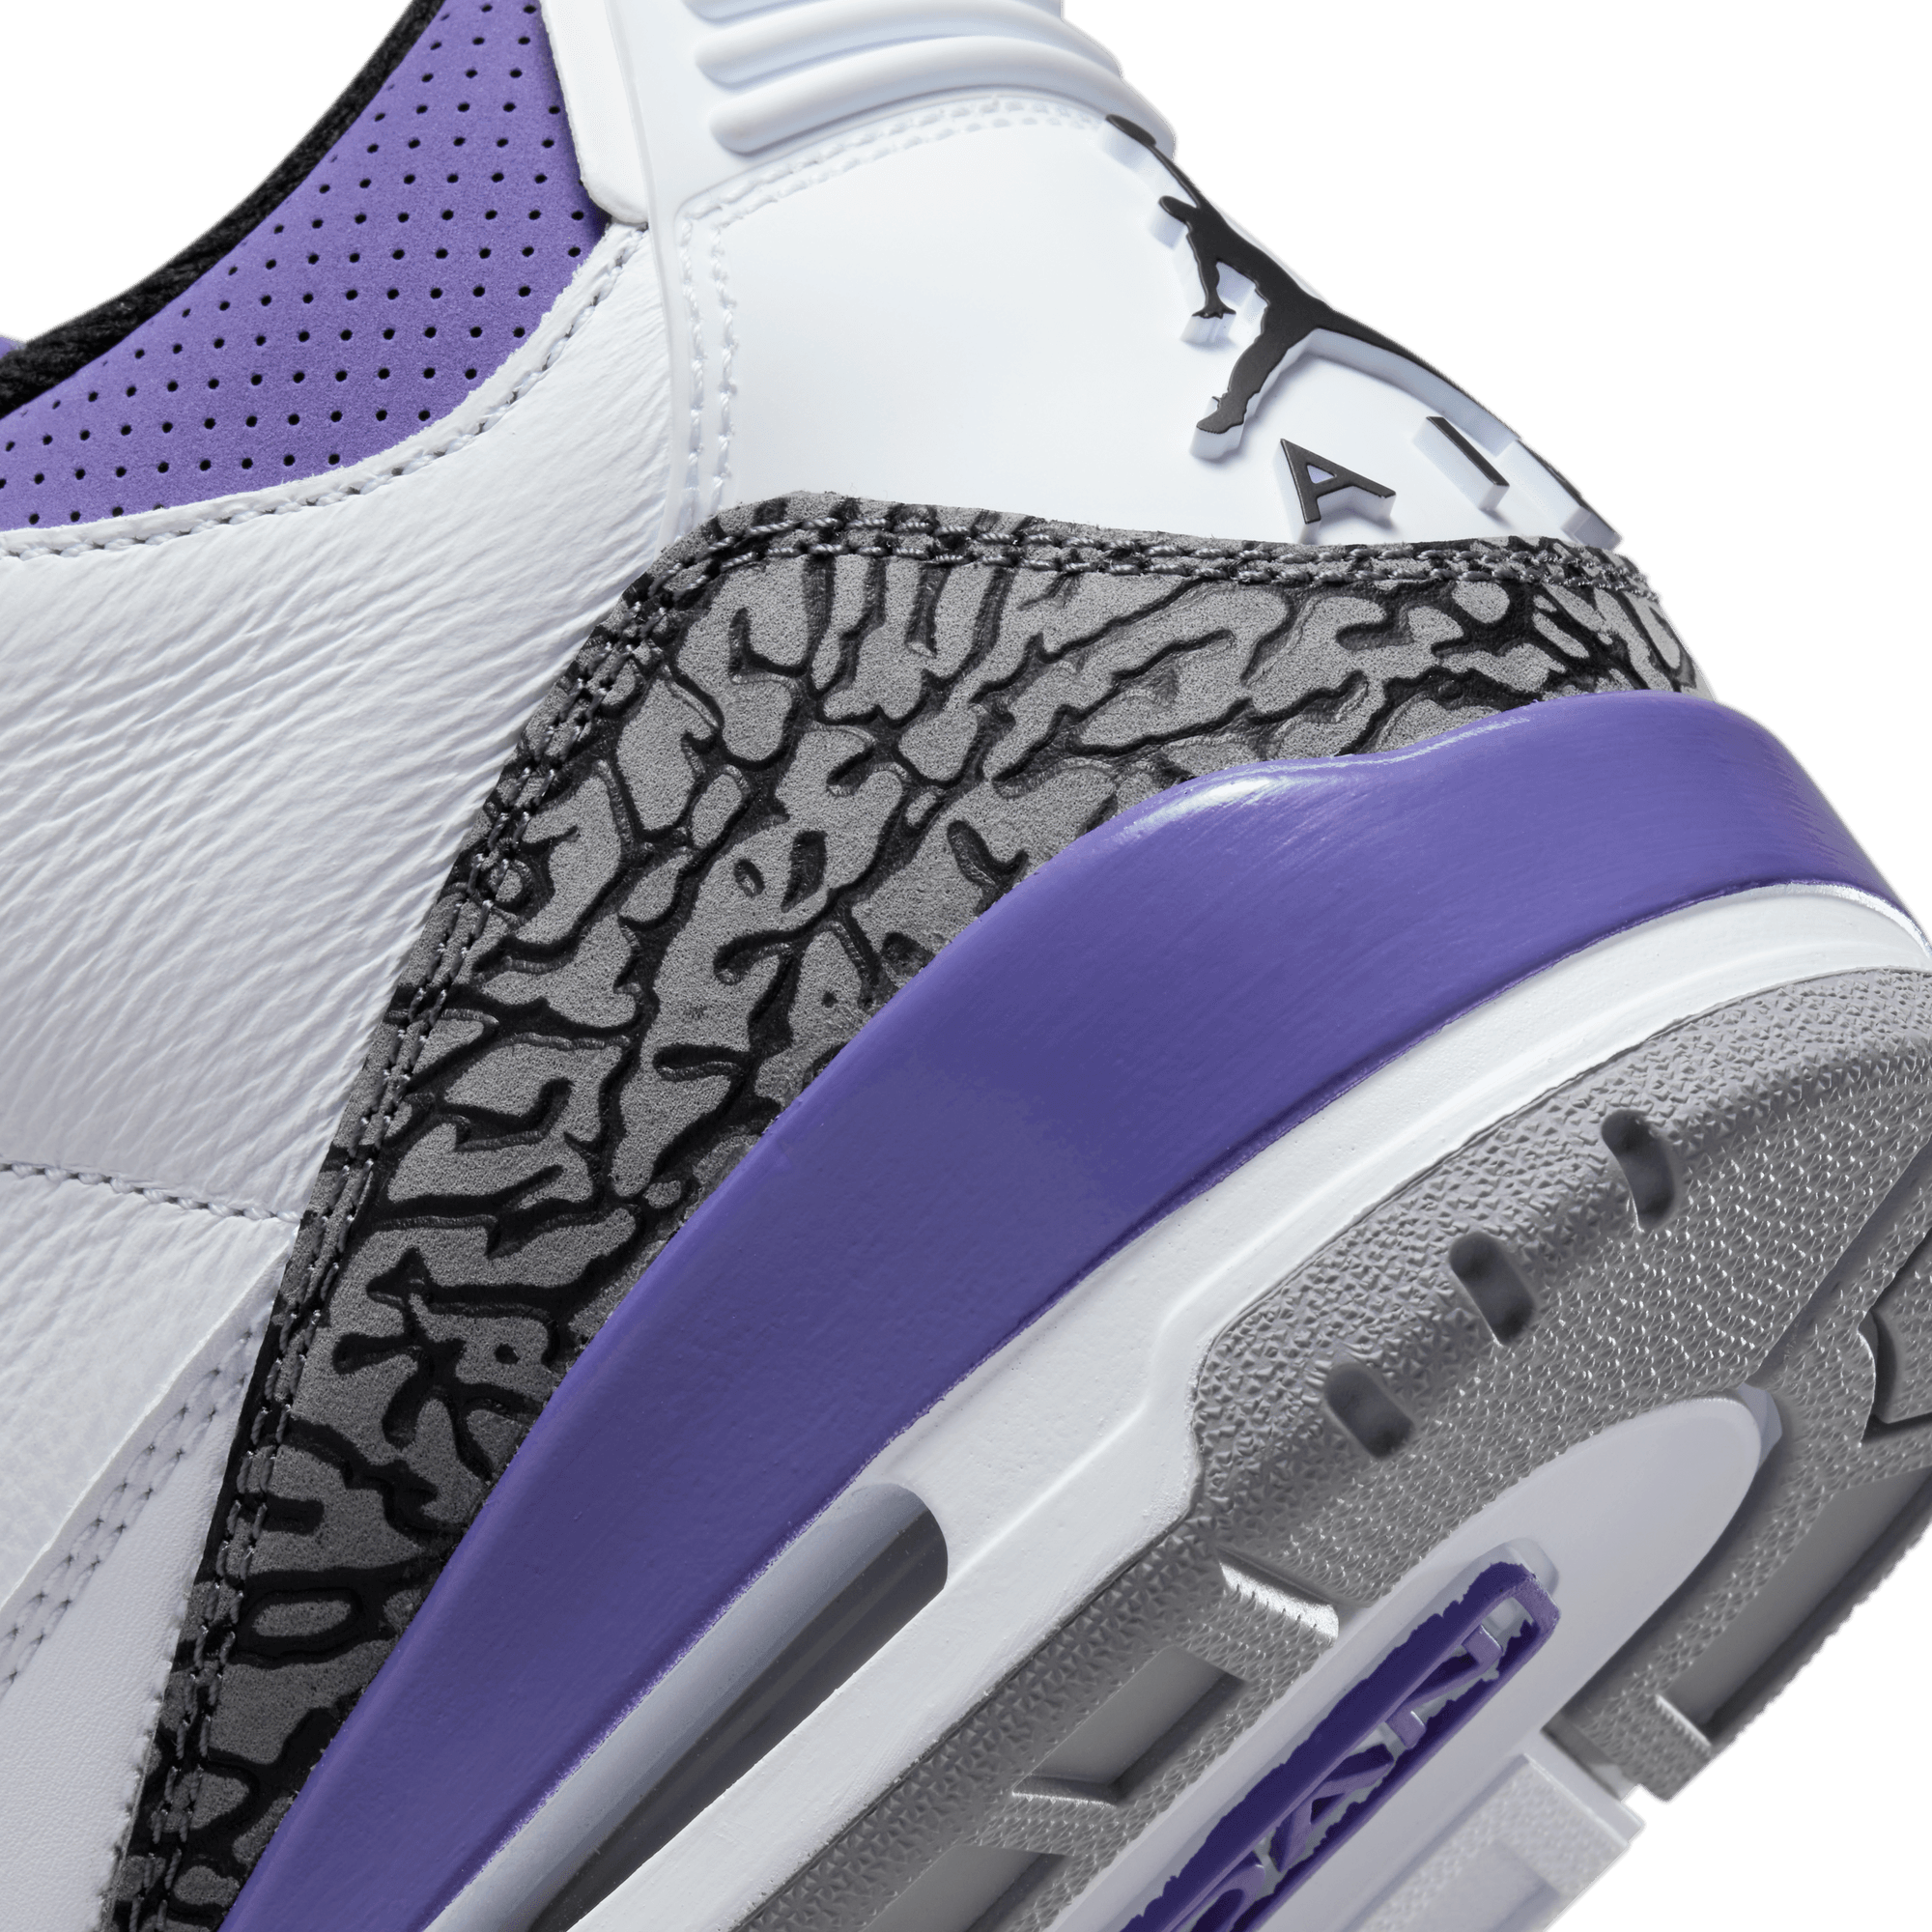 Nike Air Jordan 3 Retro